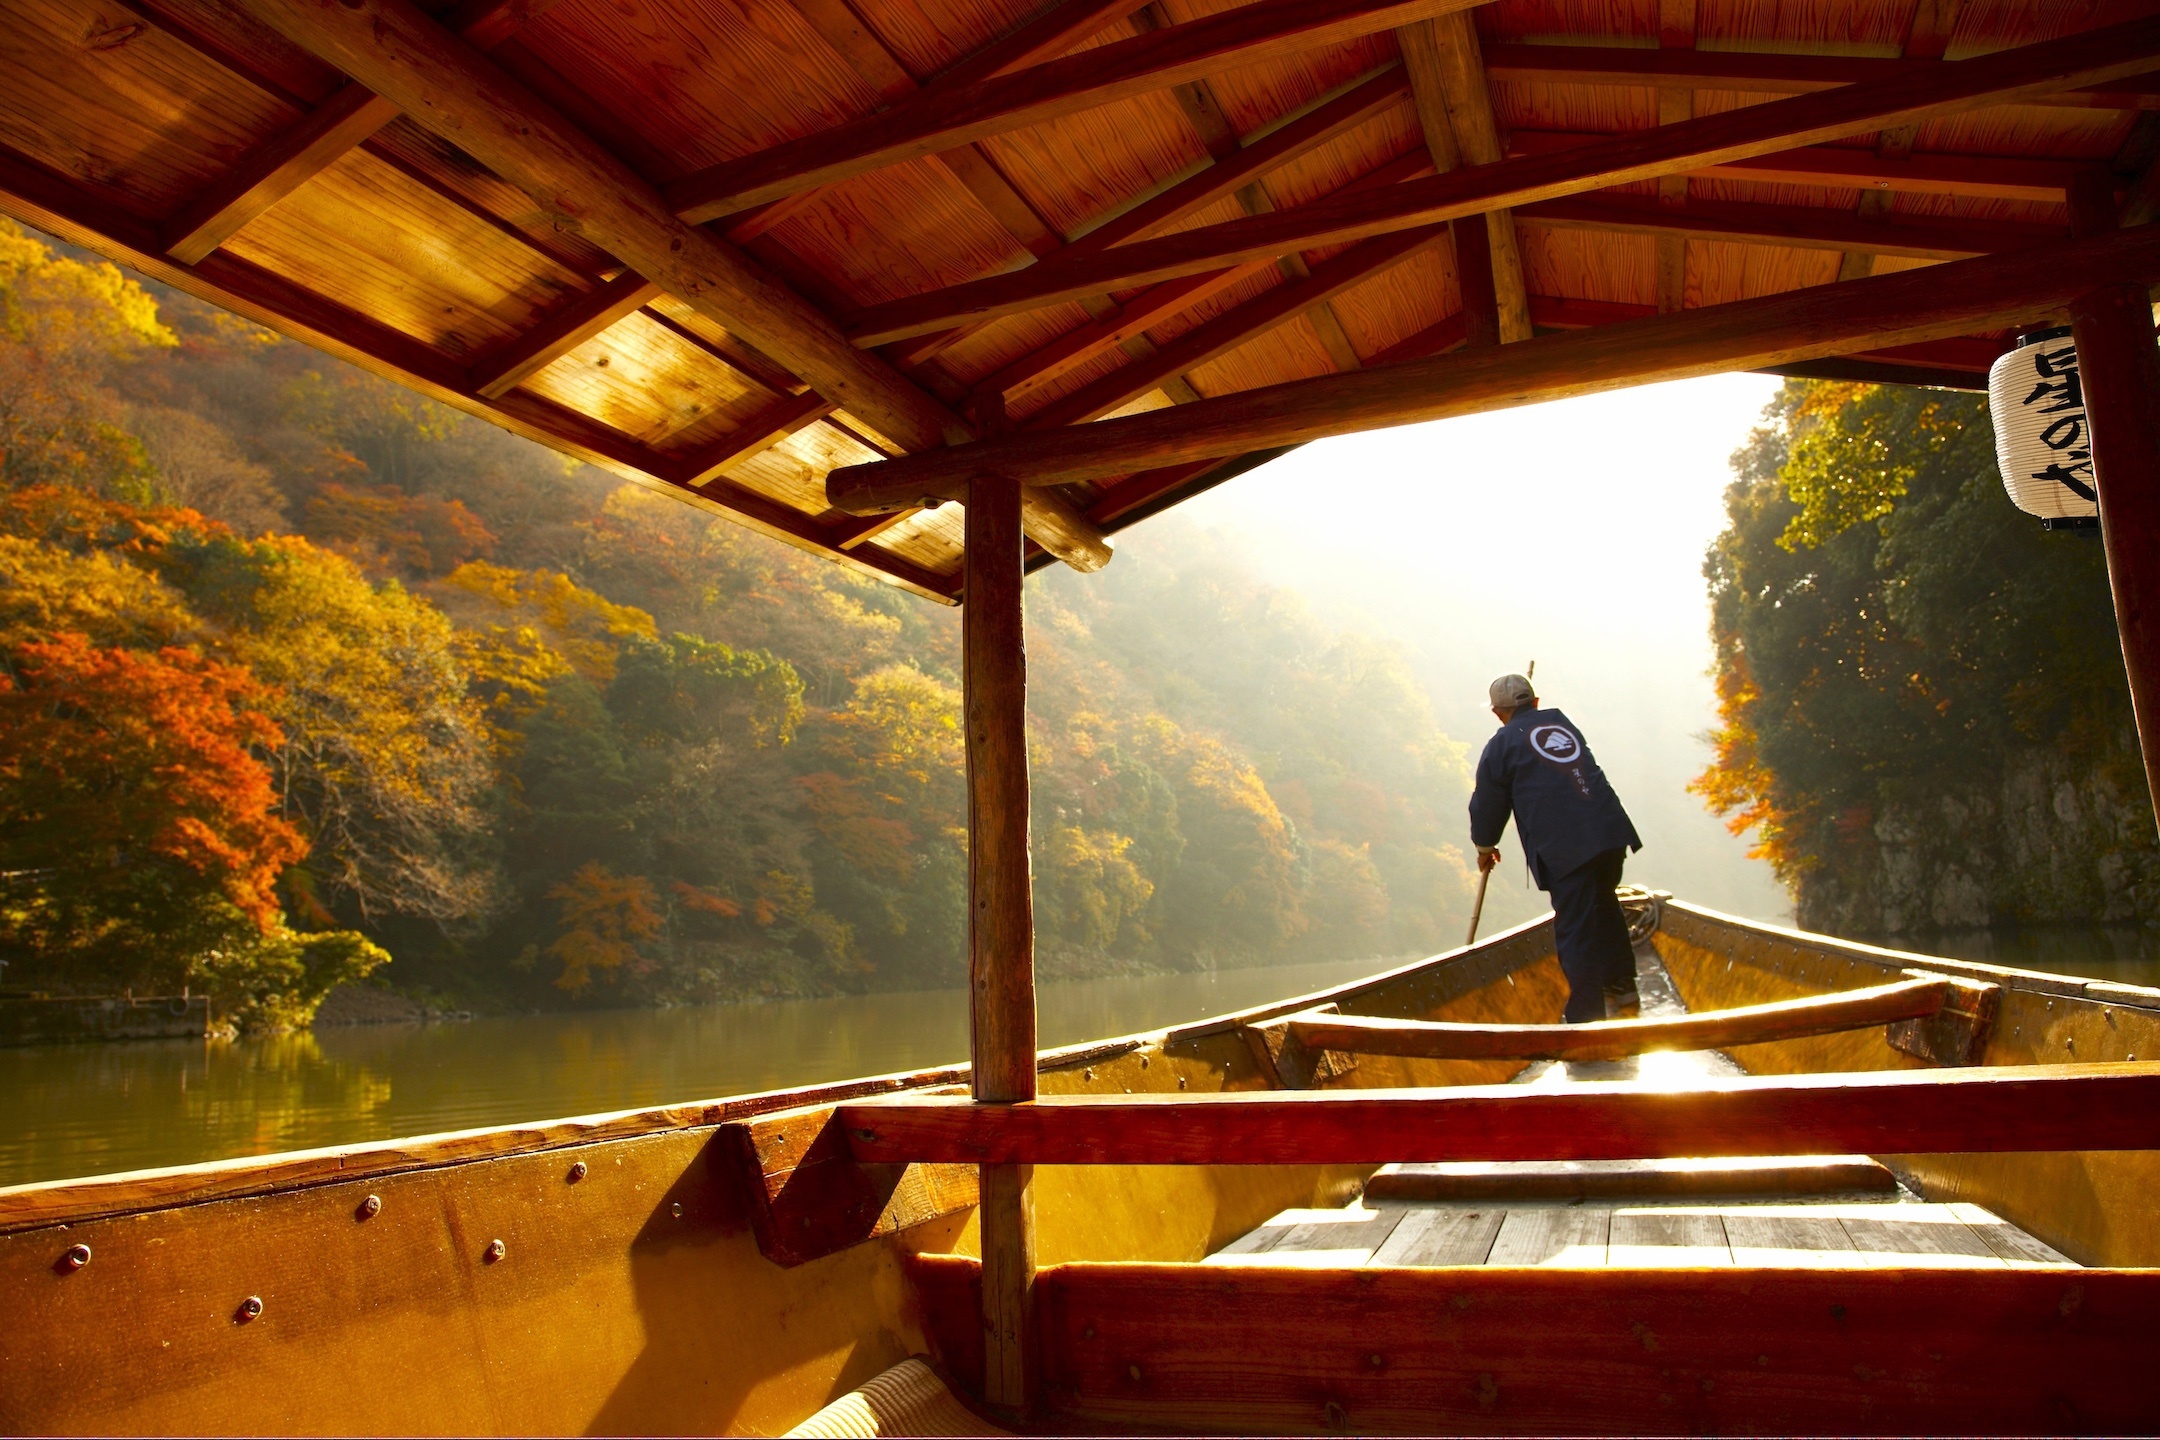 嵐山の紅葉を舟楽しむ「朝のもみじ舟」期間限定で開催